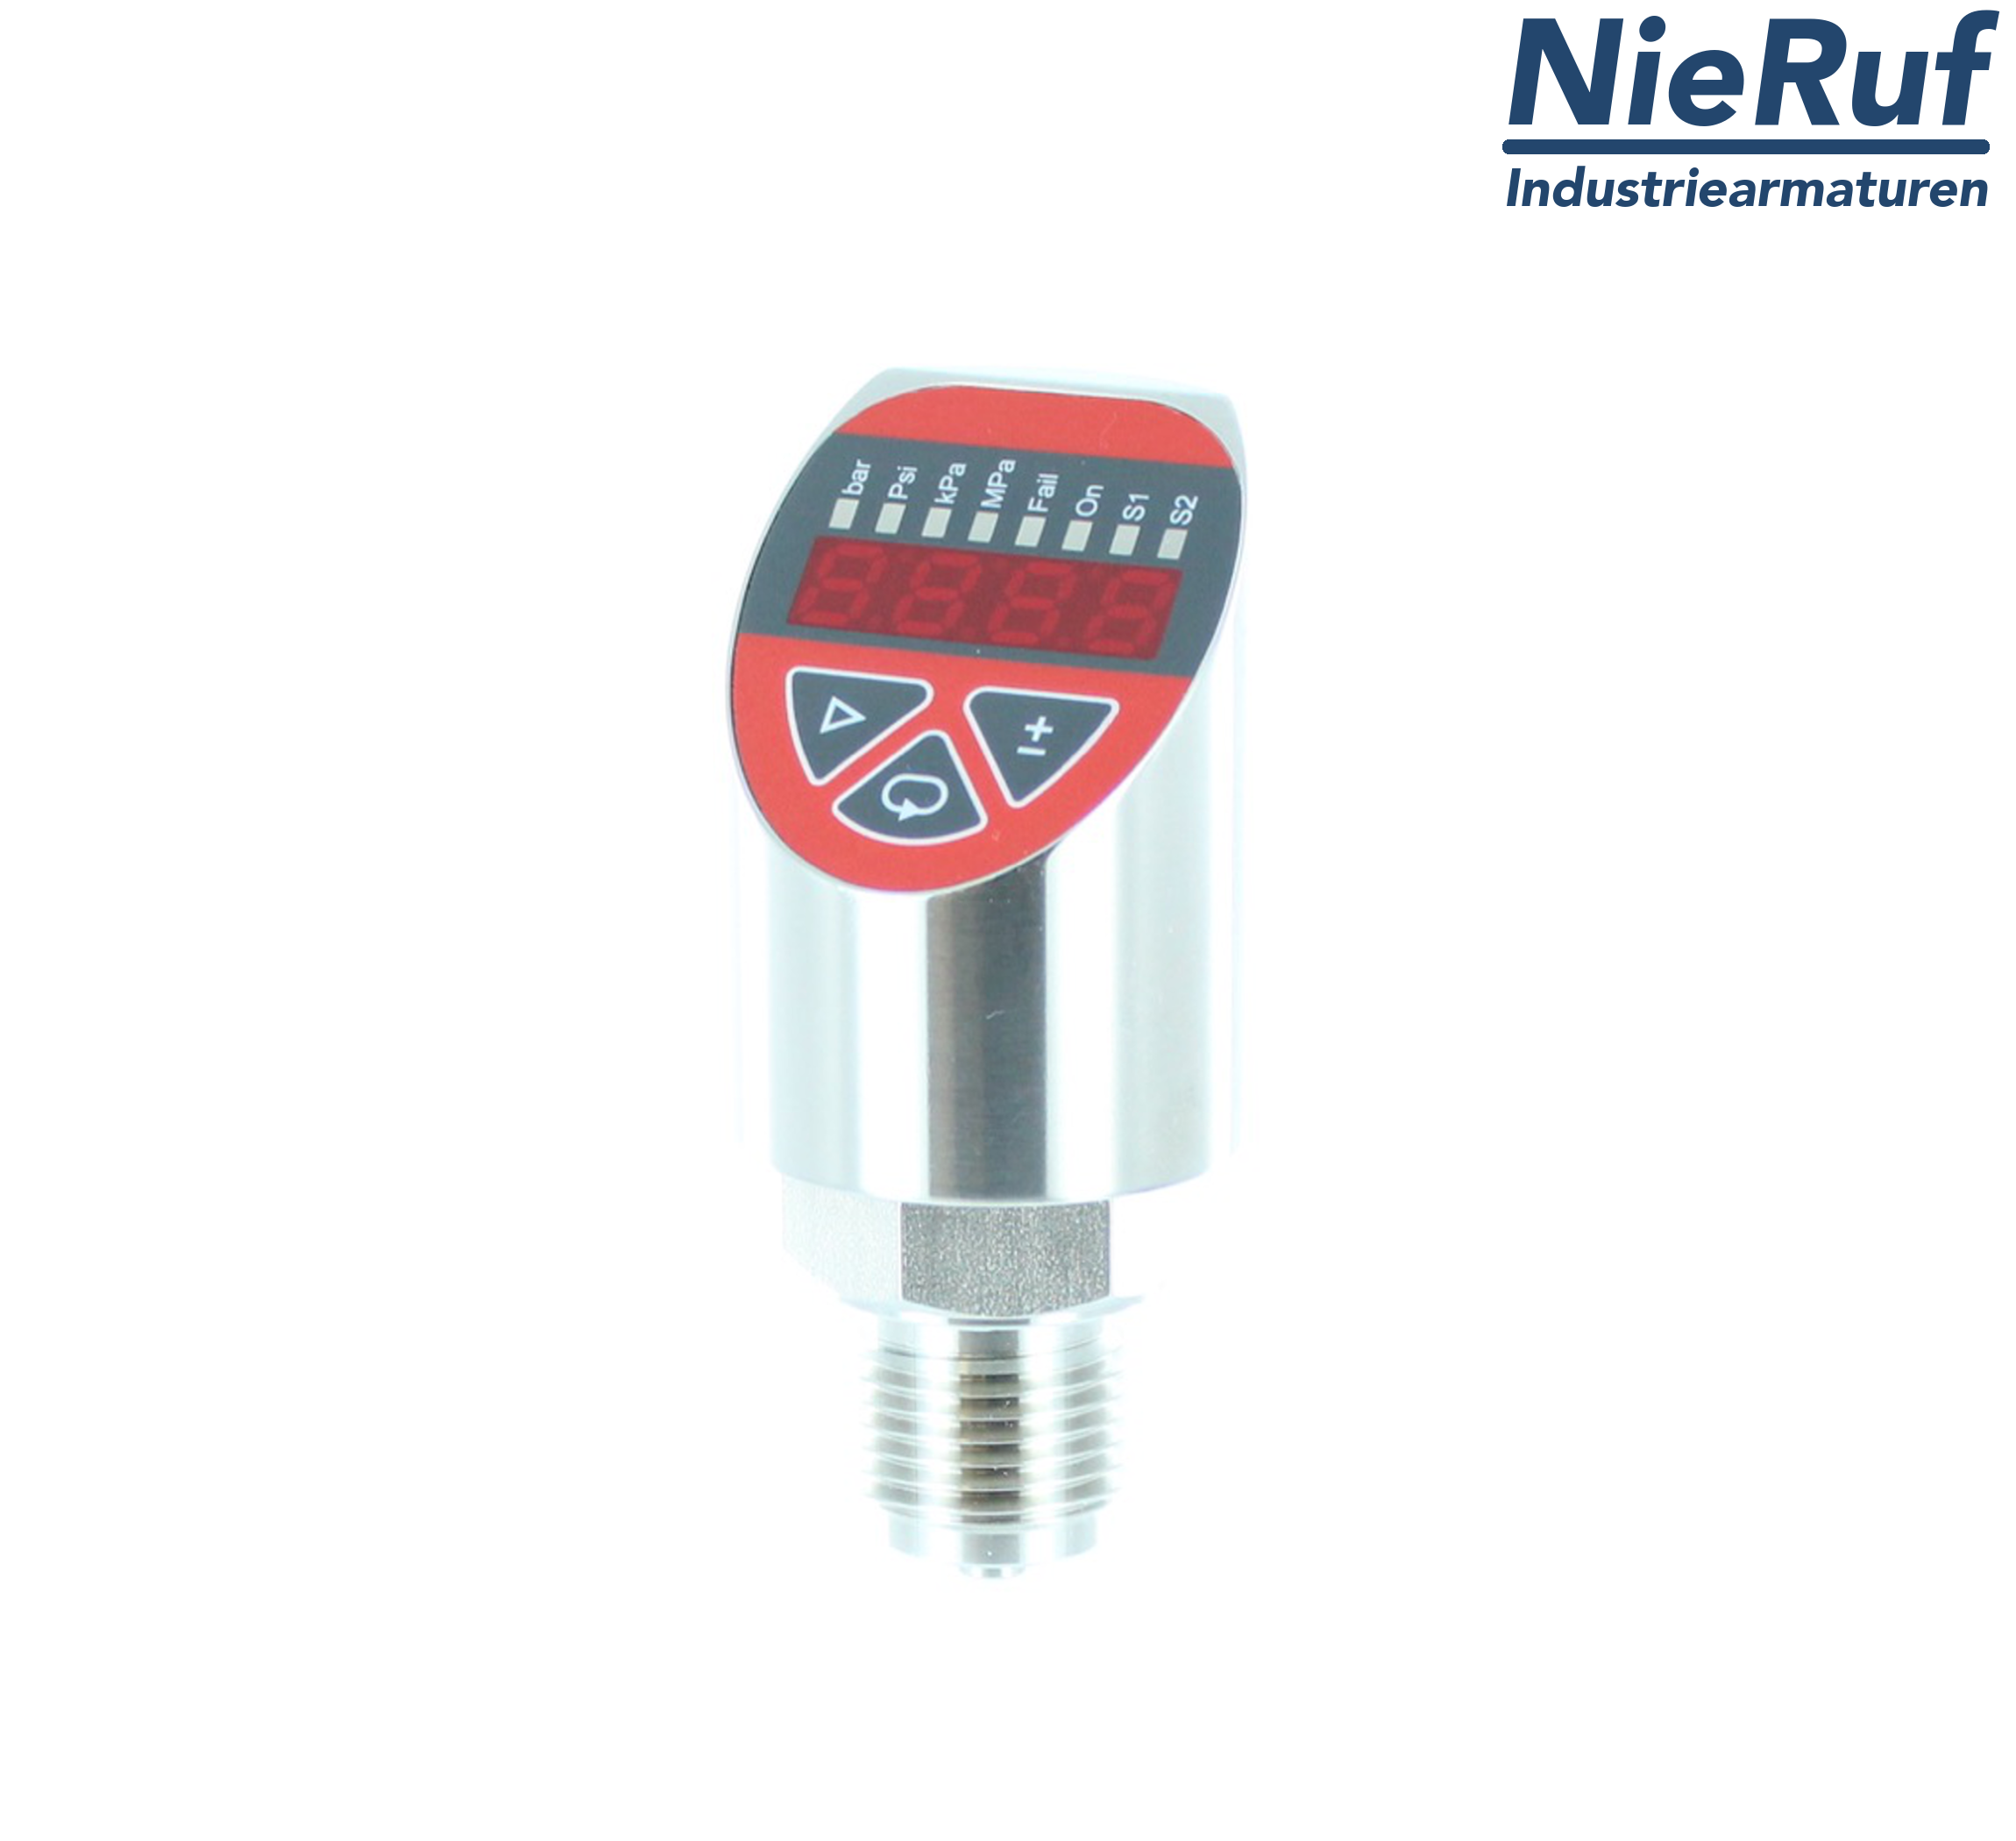 digital pressure sensor G 1/2" B IB 4-wire: 1xPNP, 1x4 - 20mA FPM 0,0 - 320,0 bar